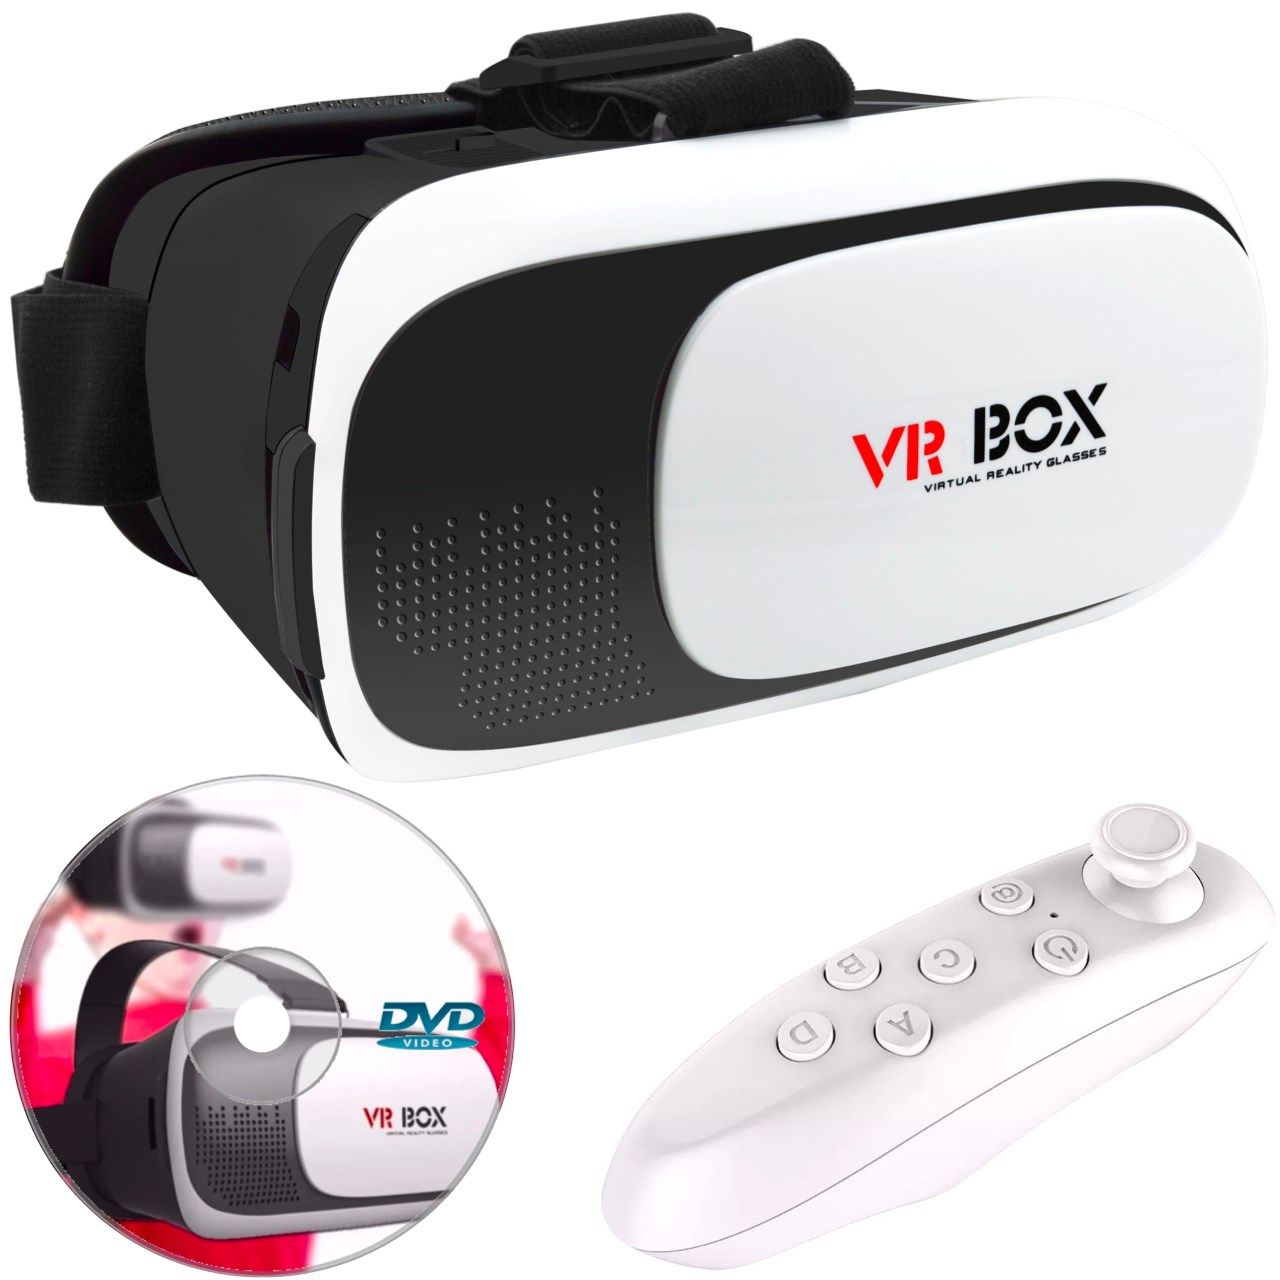 قیمت و خرید هدست واقعیت مجازی وی آر باکس مدل VR Box 2 به همراه ریموت کنترلبلوتوث و DVD حاوی اپلیکیشن و LED Watch هدیه